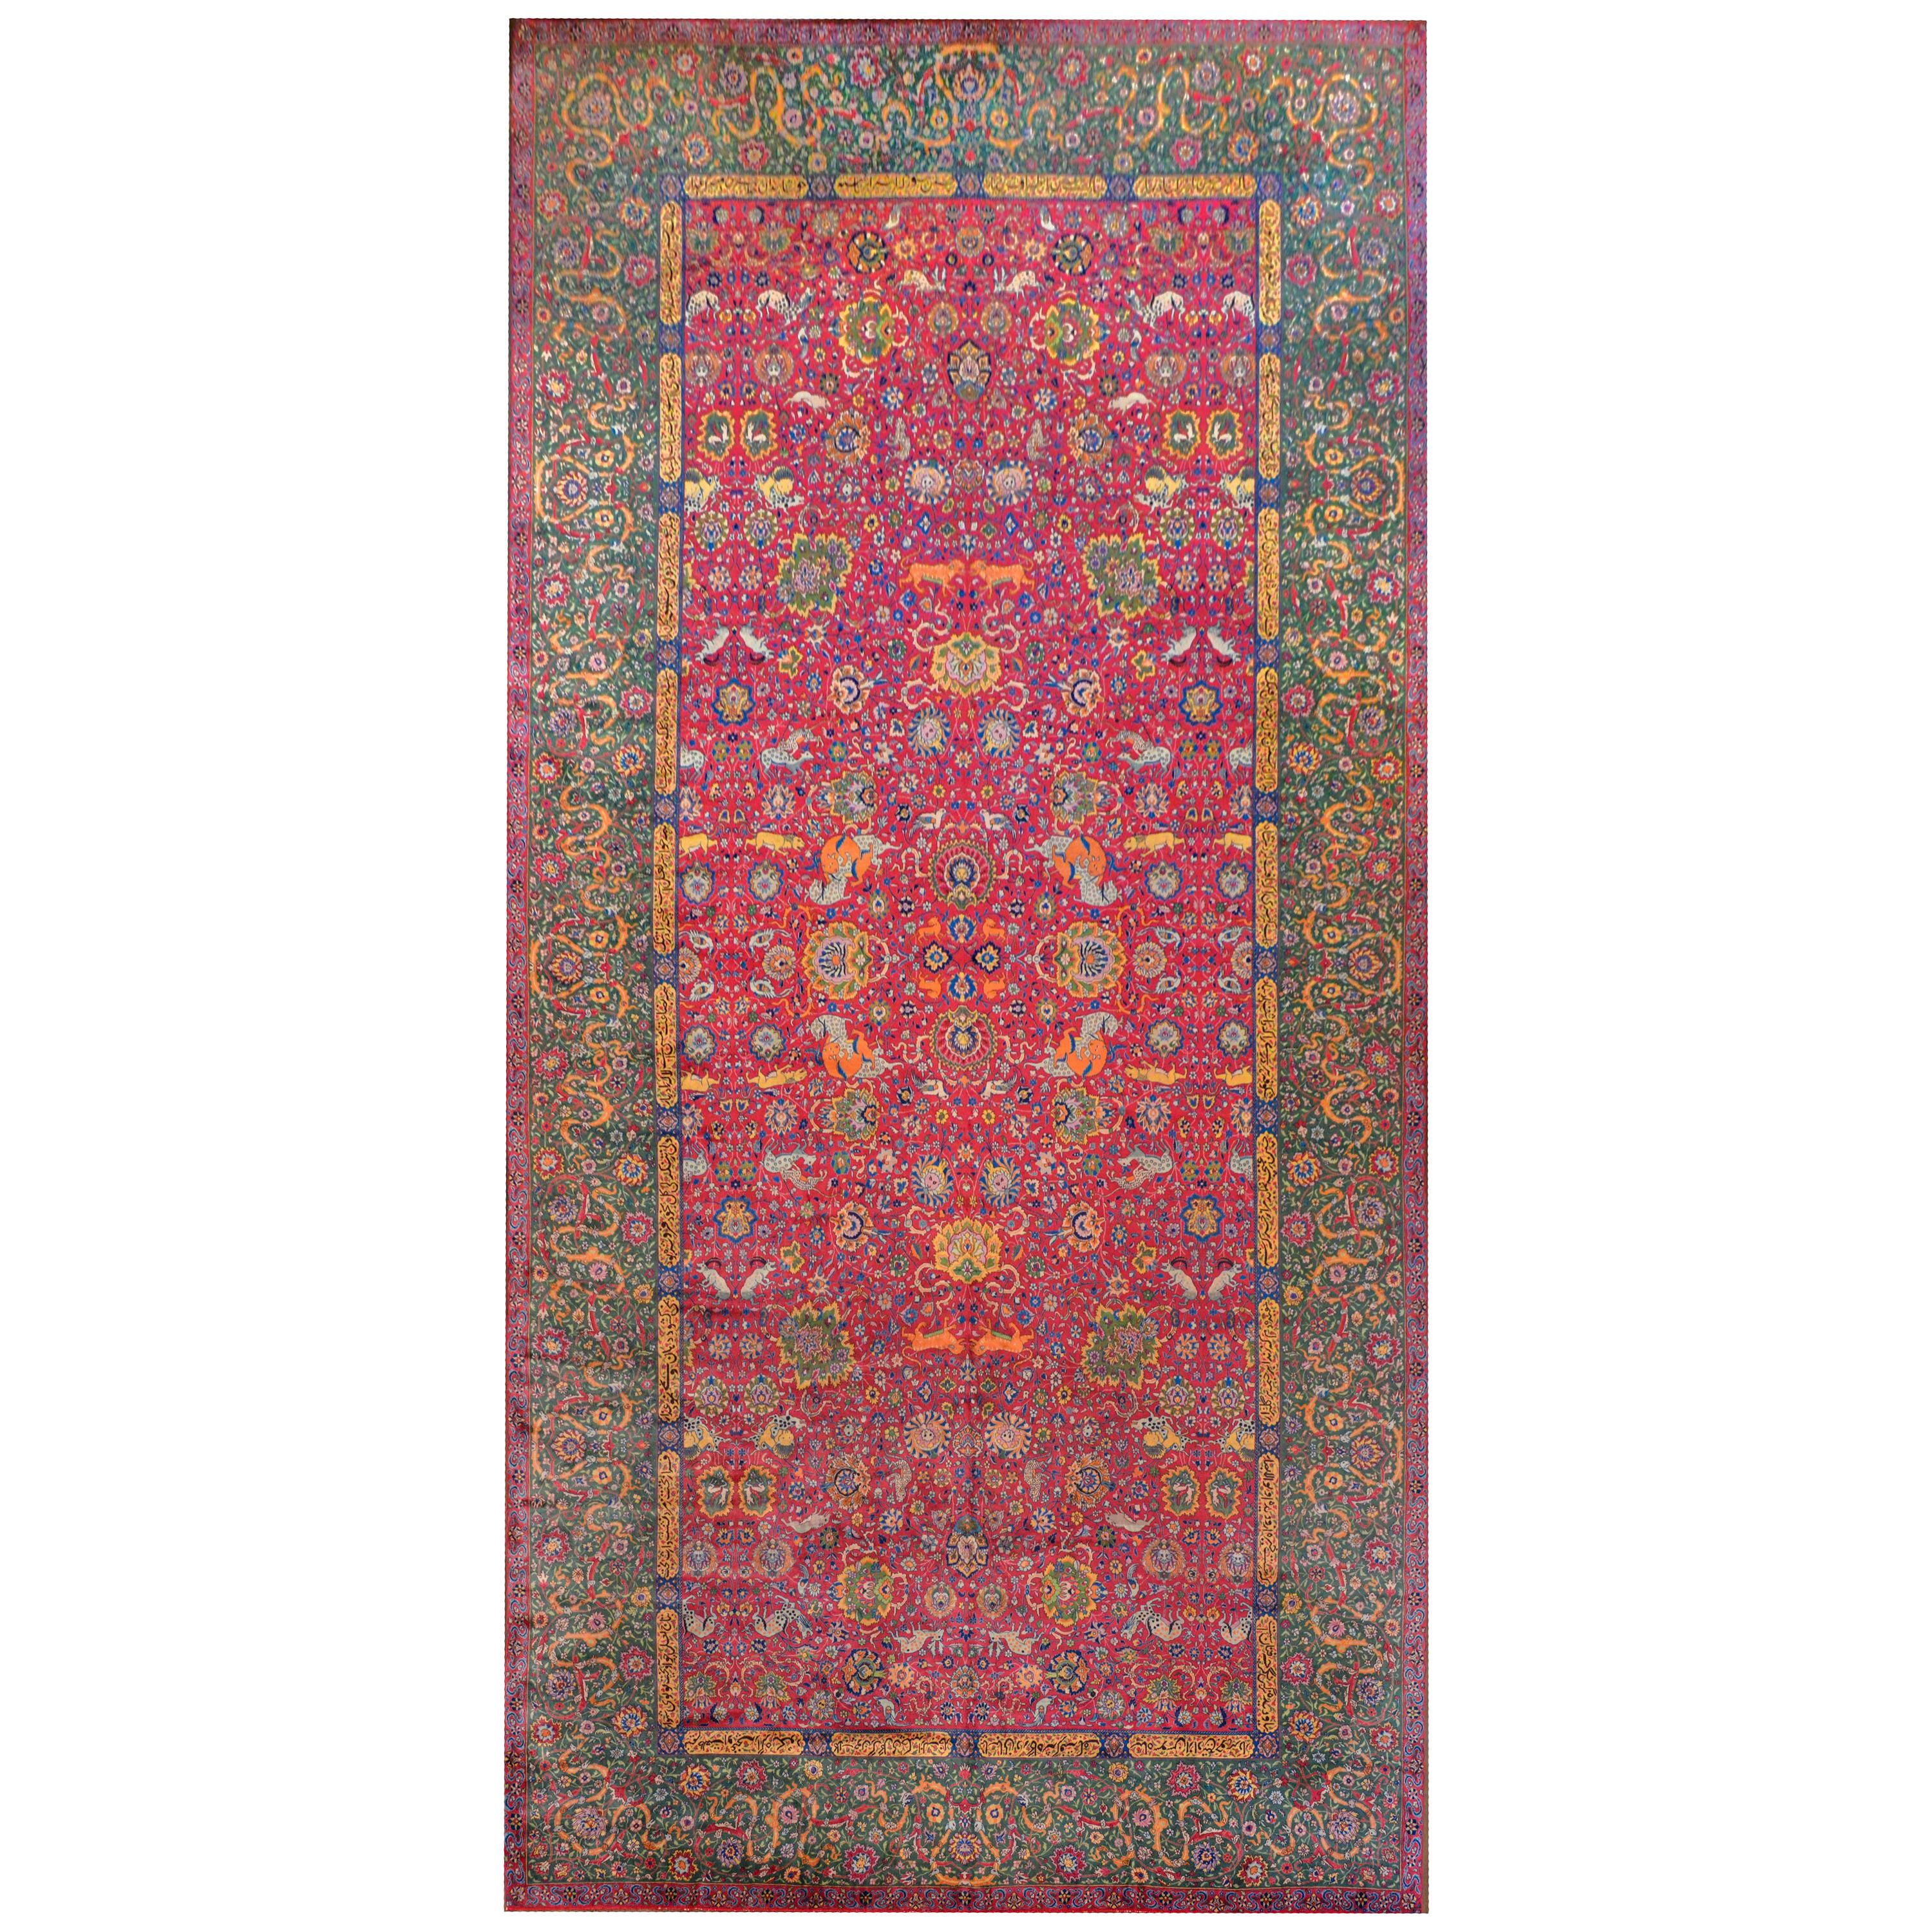 Wunderschöner Agra-Teppich aus dem frühen 20.